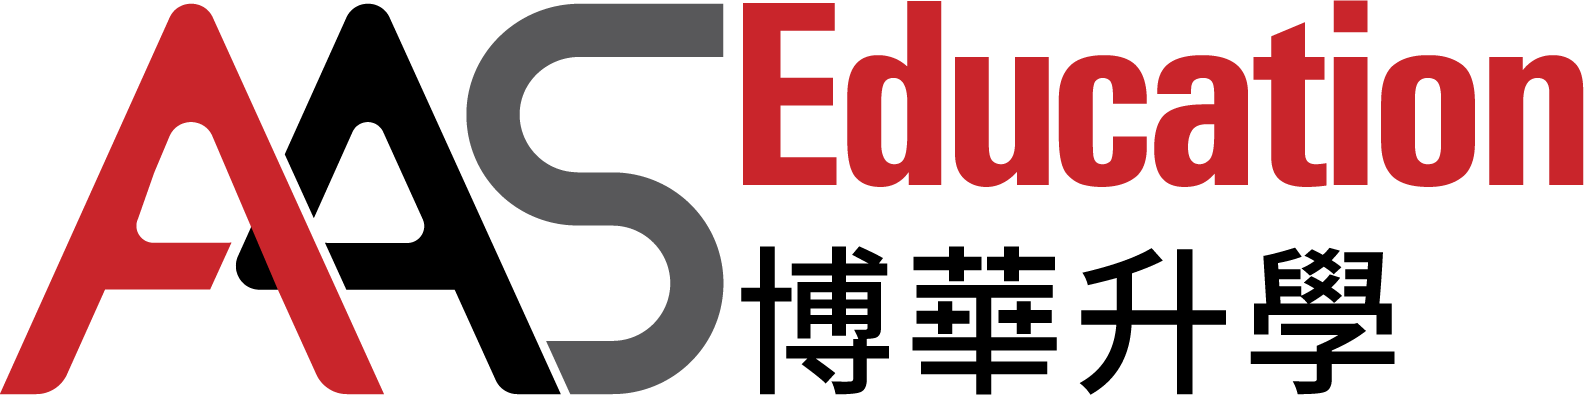 Aas edu hk logo